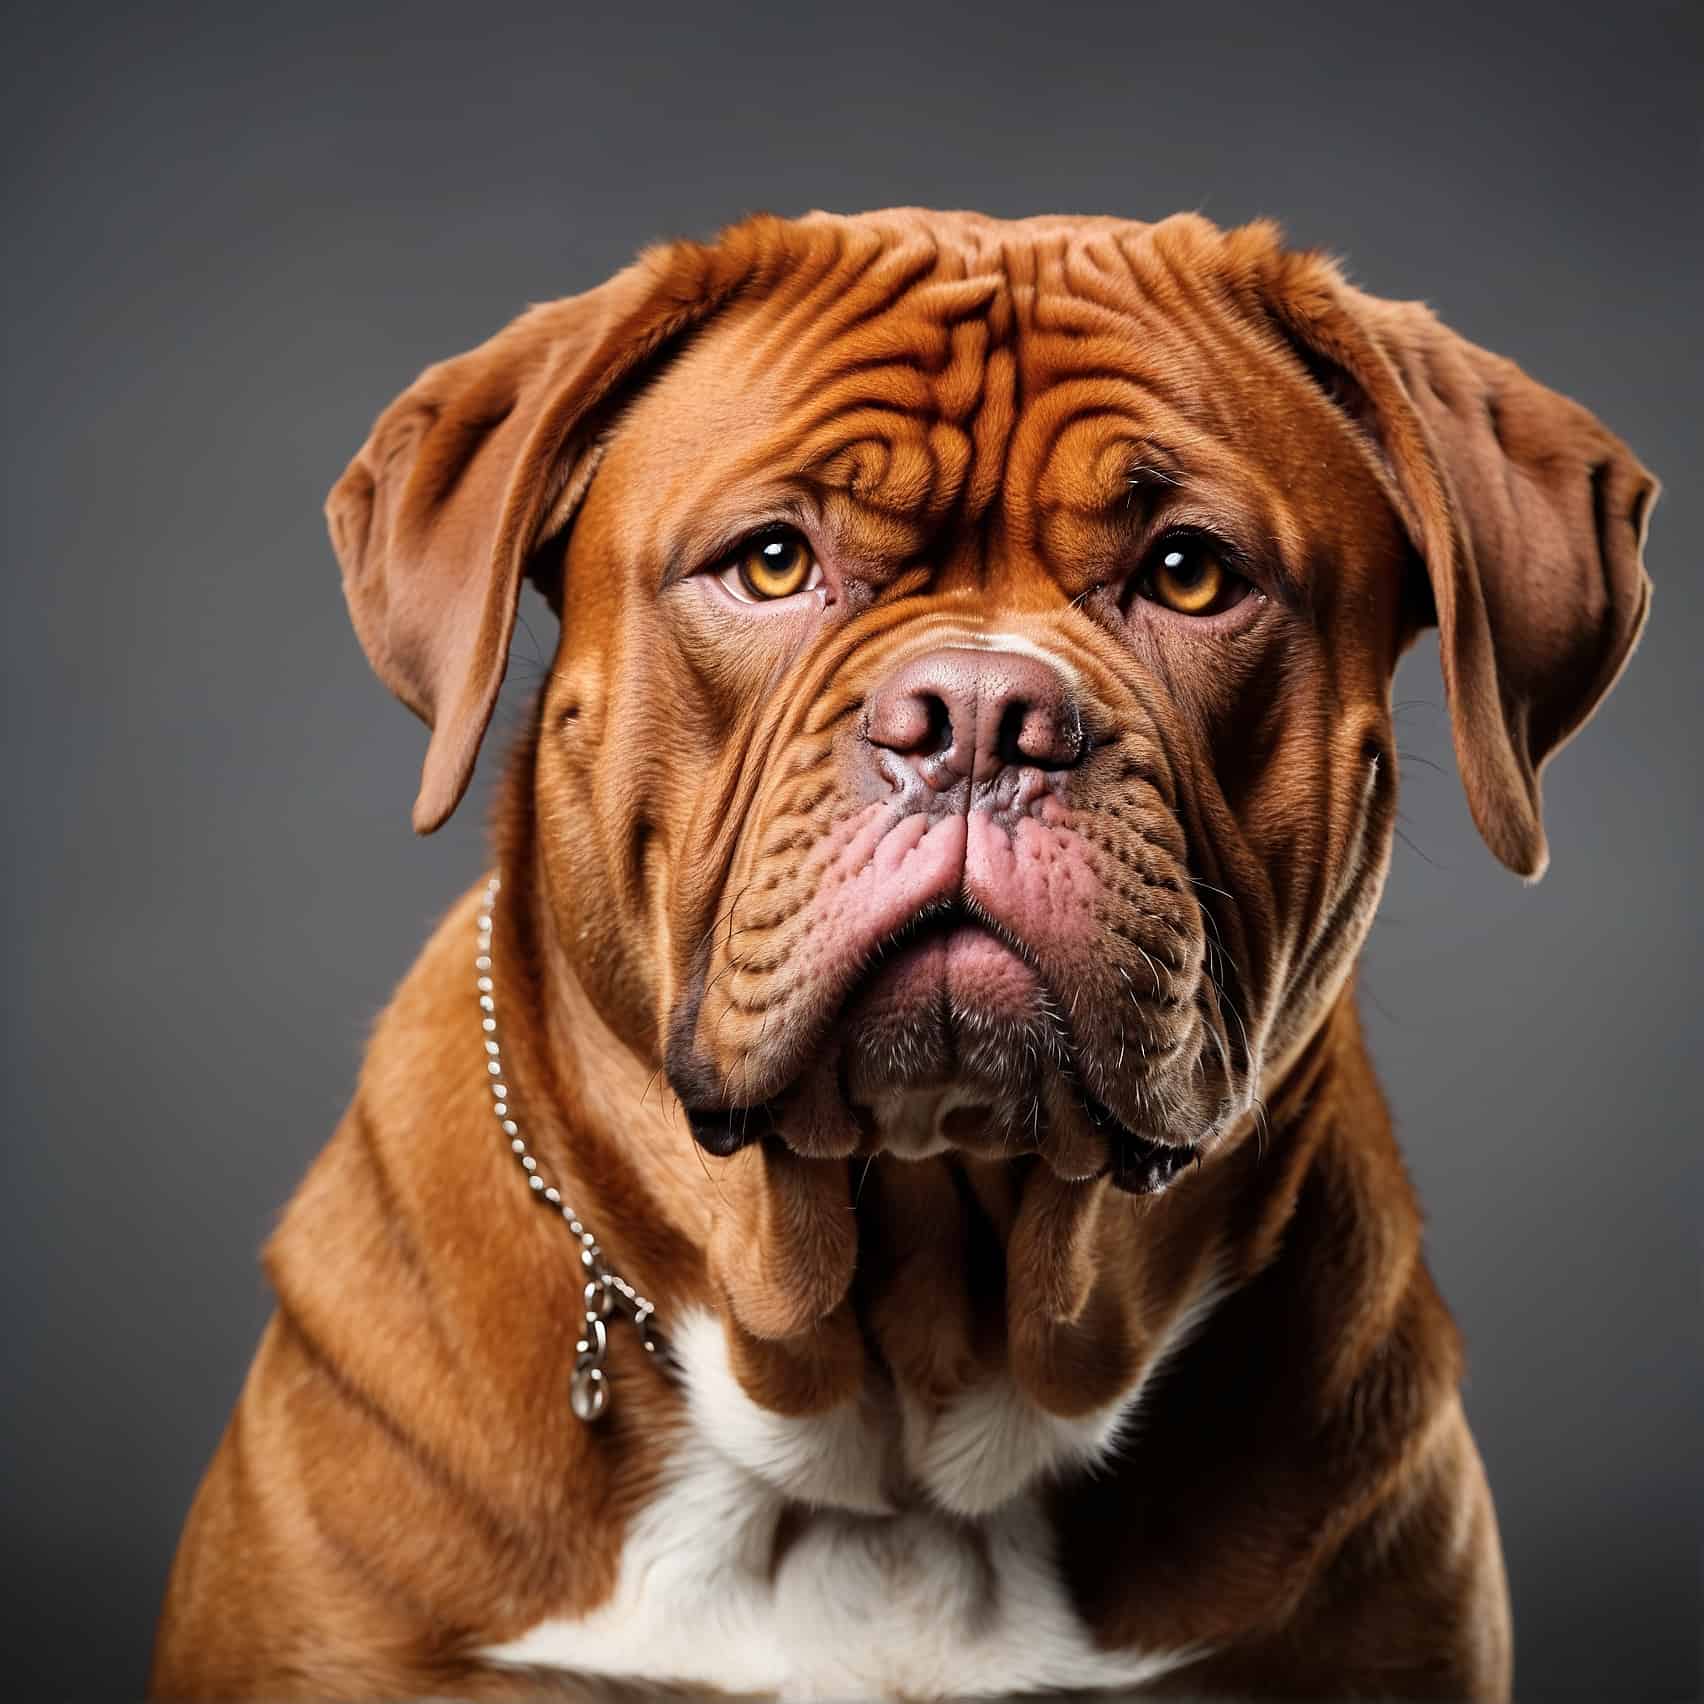 French Mastiff (Dogue de Bordeaux) Headshot Portrait